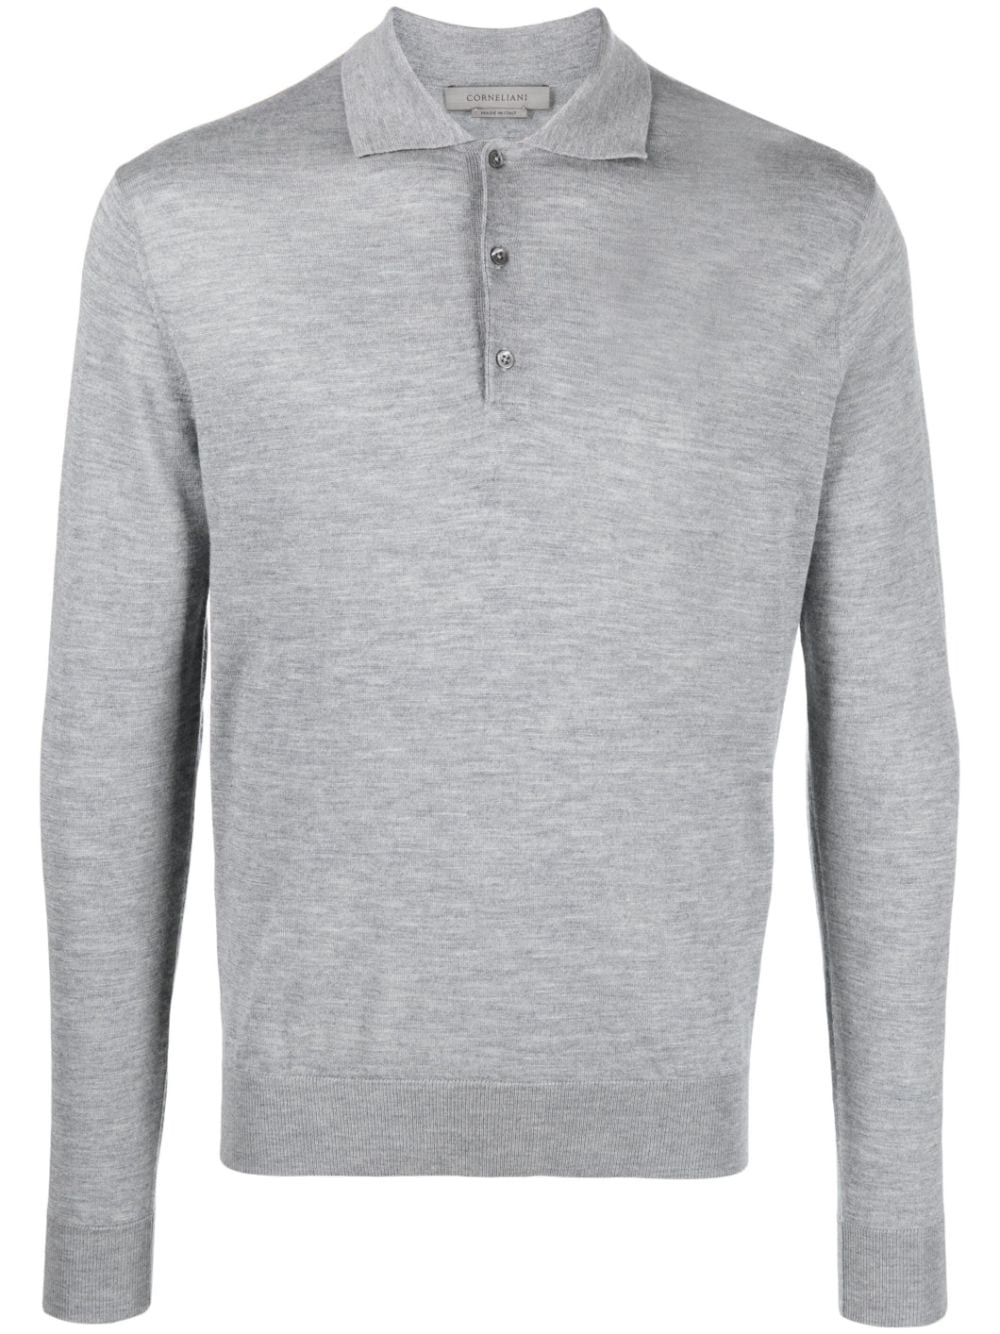 Corneliani Long Sleeve Polo Shirt In Grey